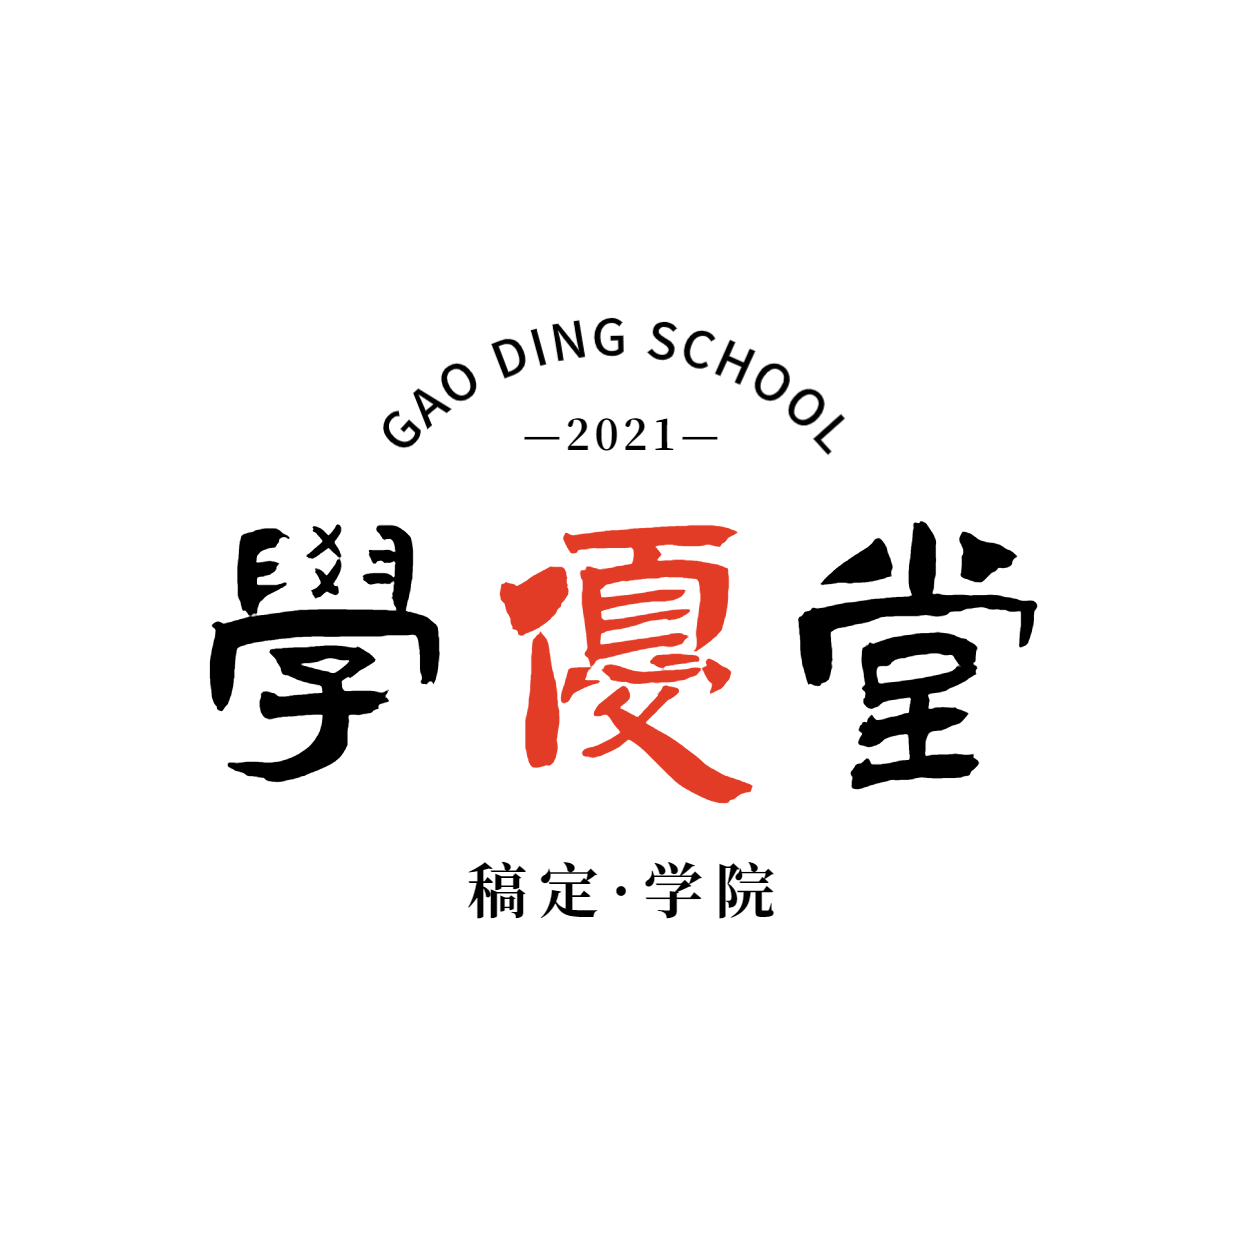 教育培训学院简约清新logo预览效果